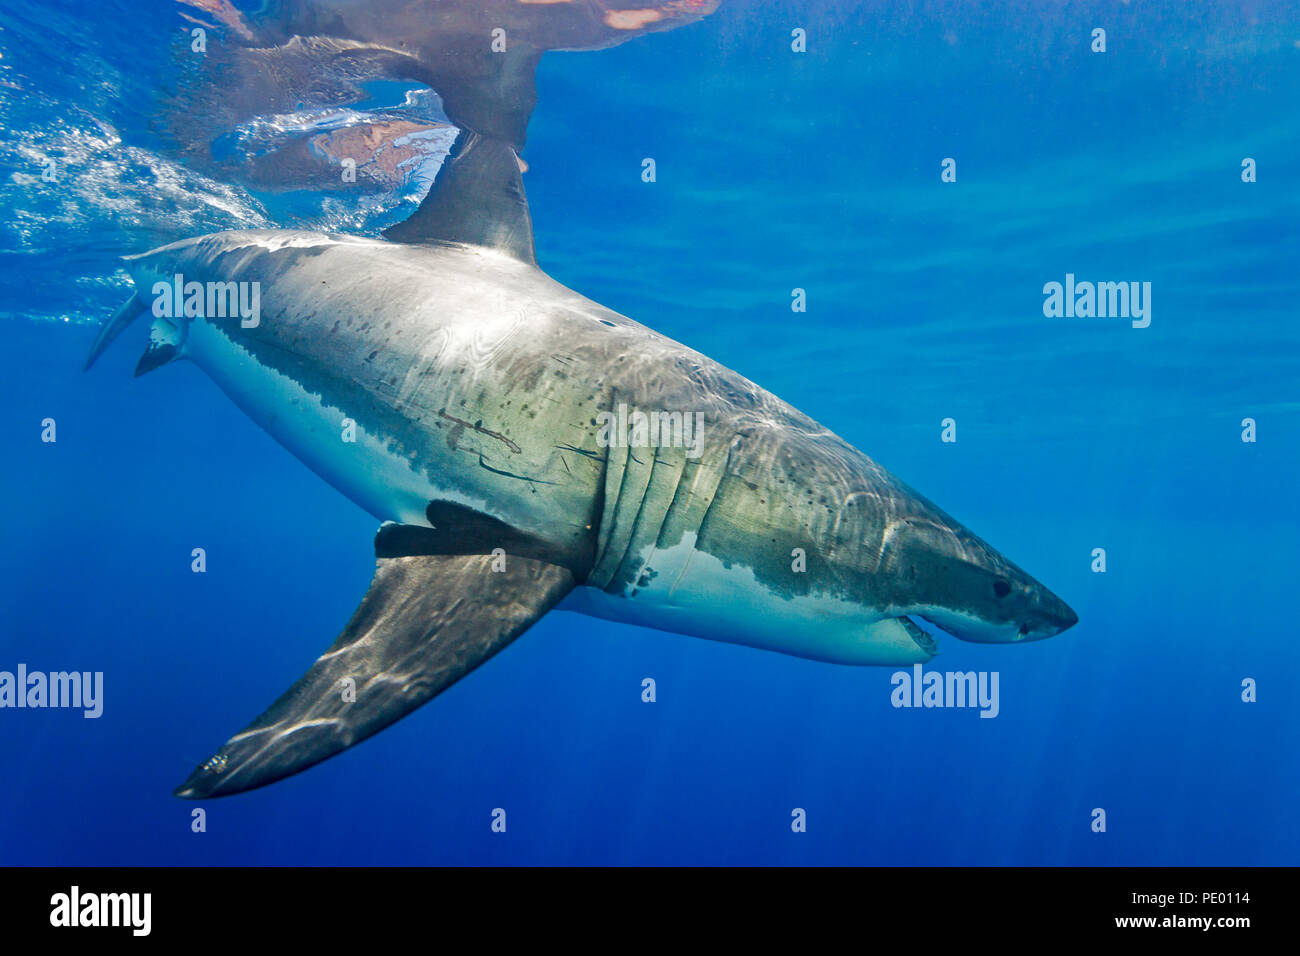 Ce grand requin blanc, Carcharodon carcharias, a été photographié au large de l'île de Guadalupe, au Mexique. Banque D'Images